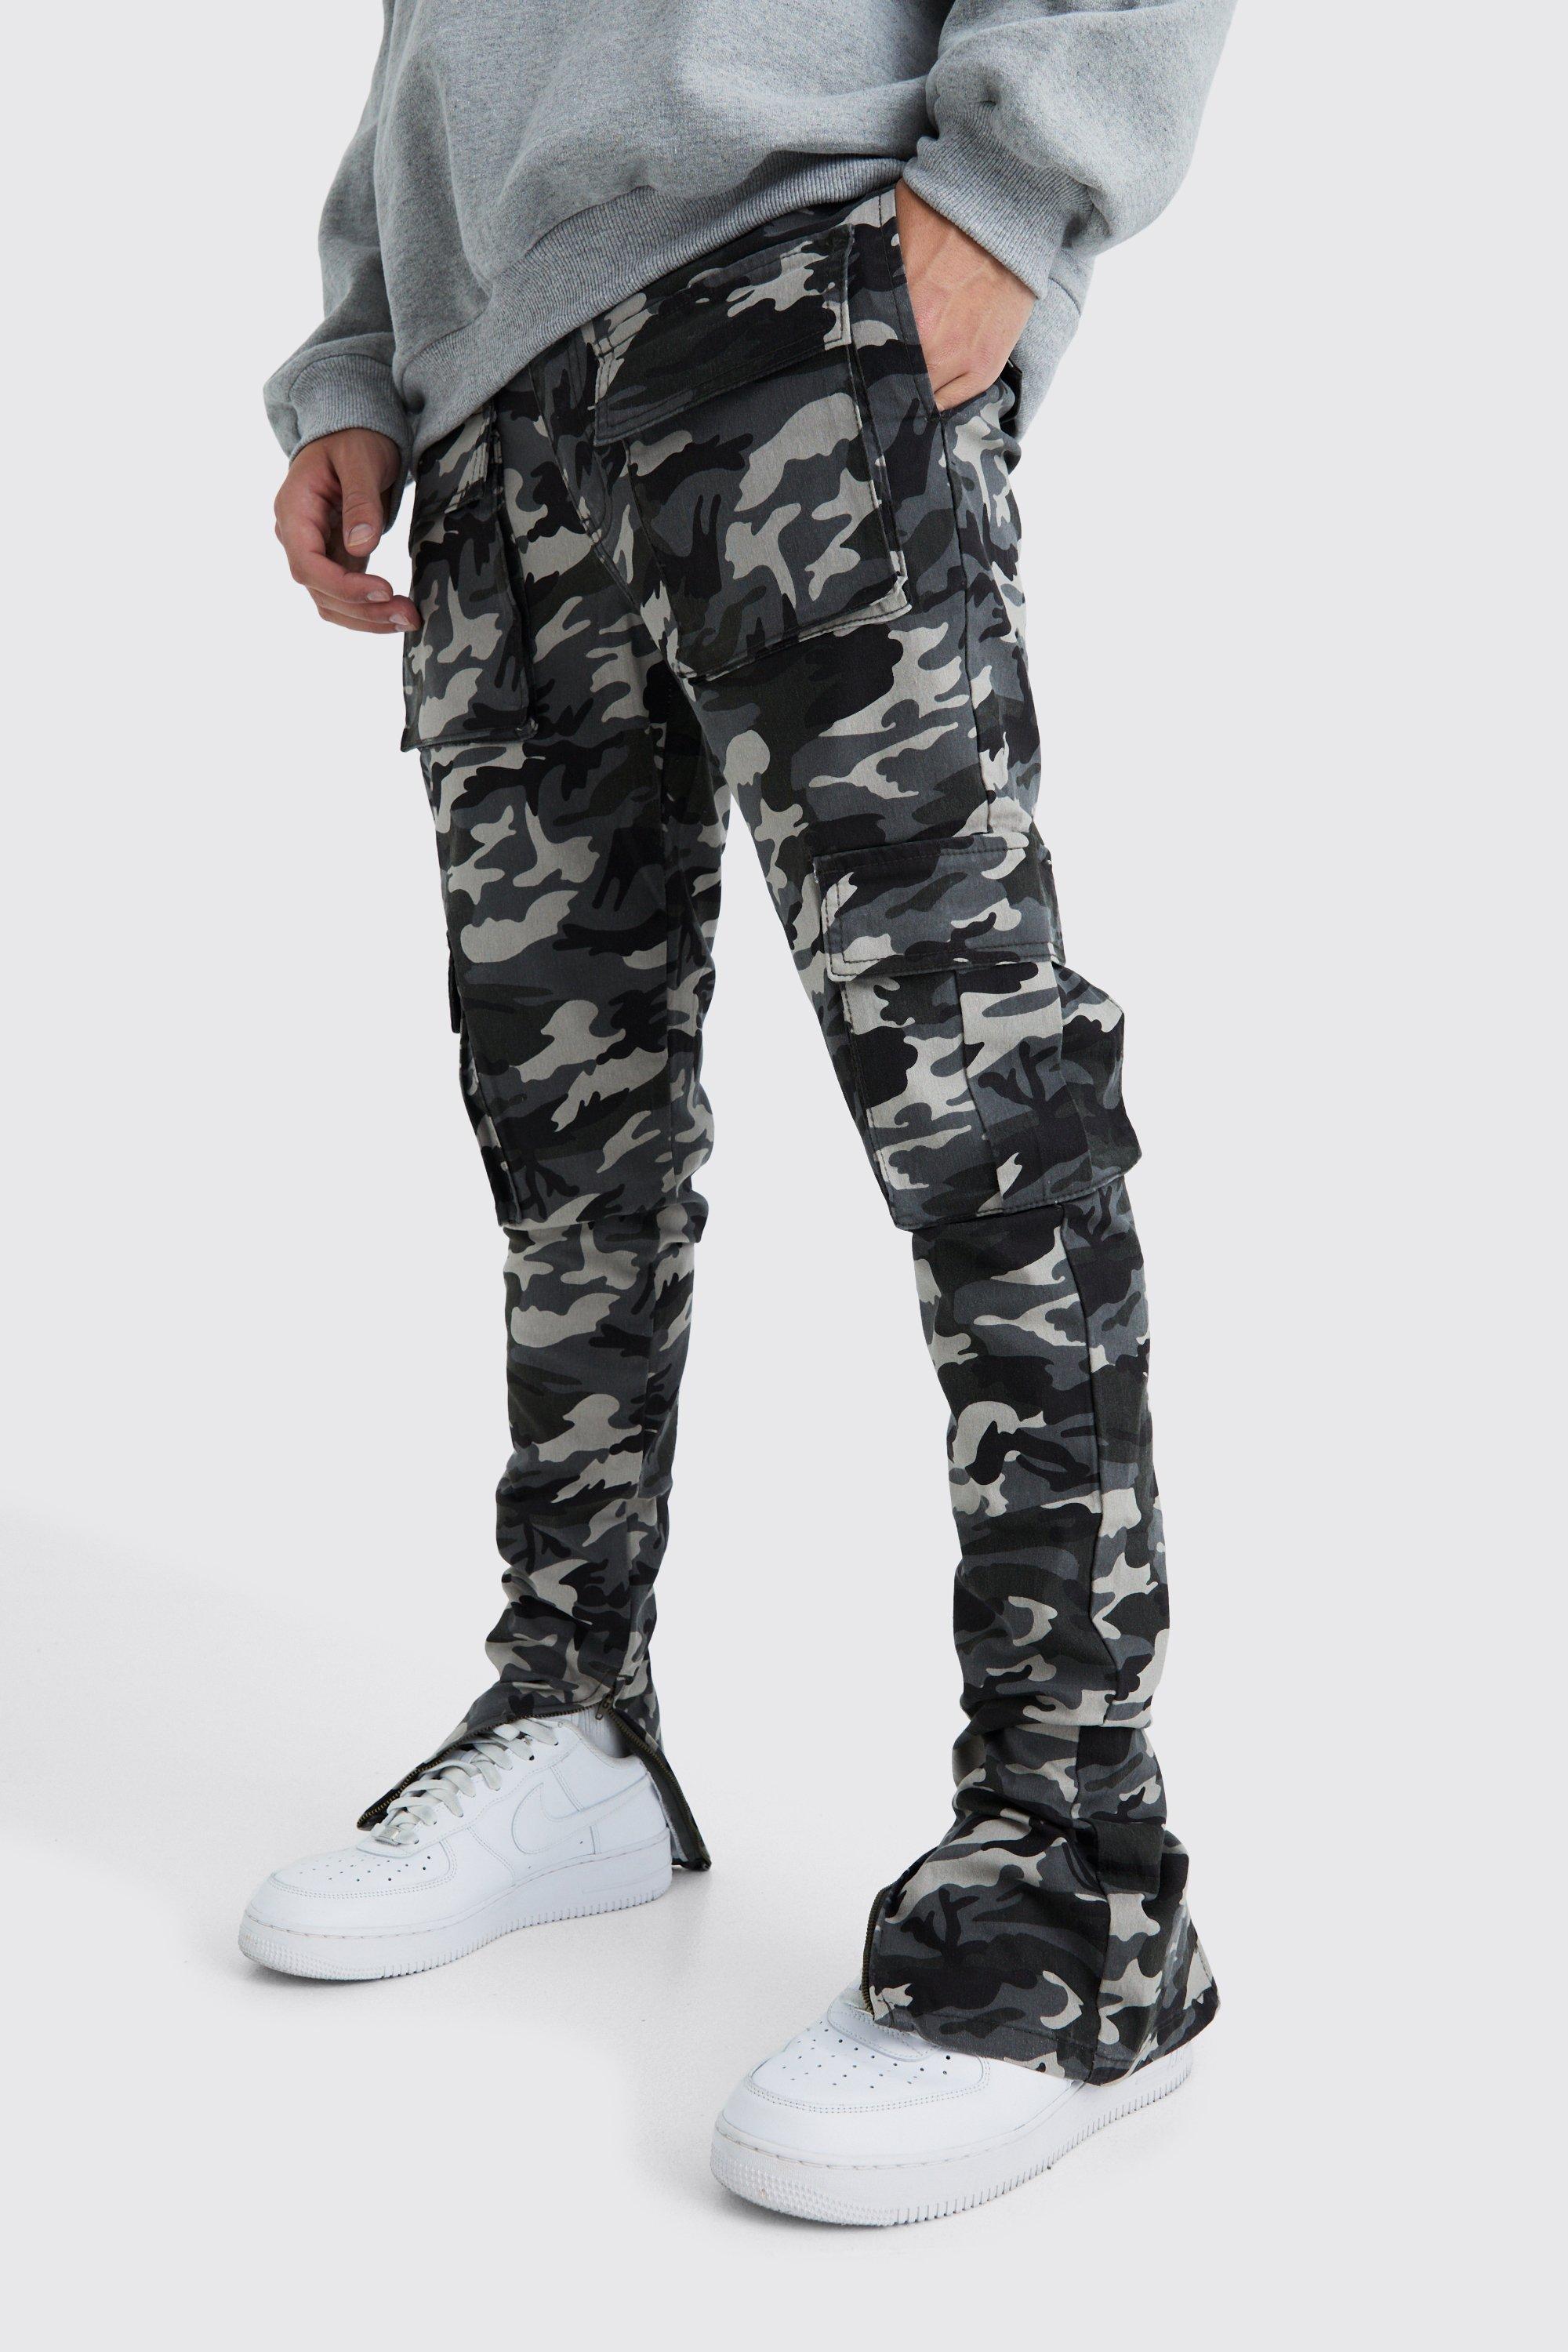 pantalon cargo skinny à imprimé camouflage homme - gris - 28, gris